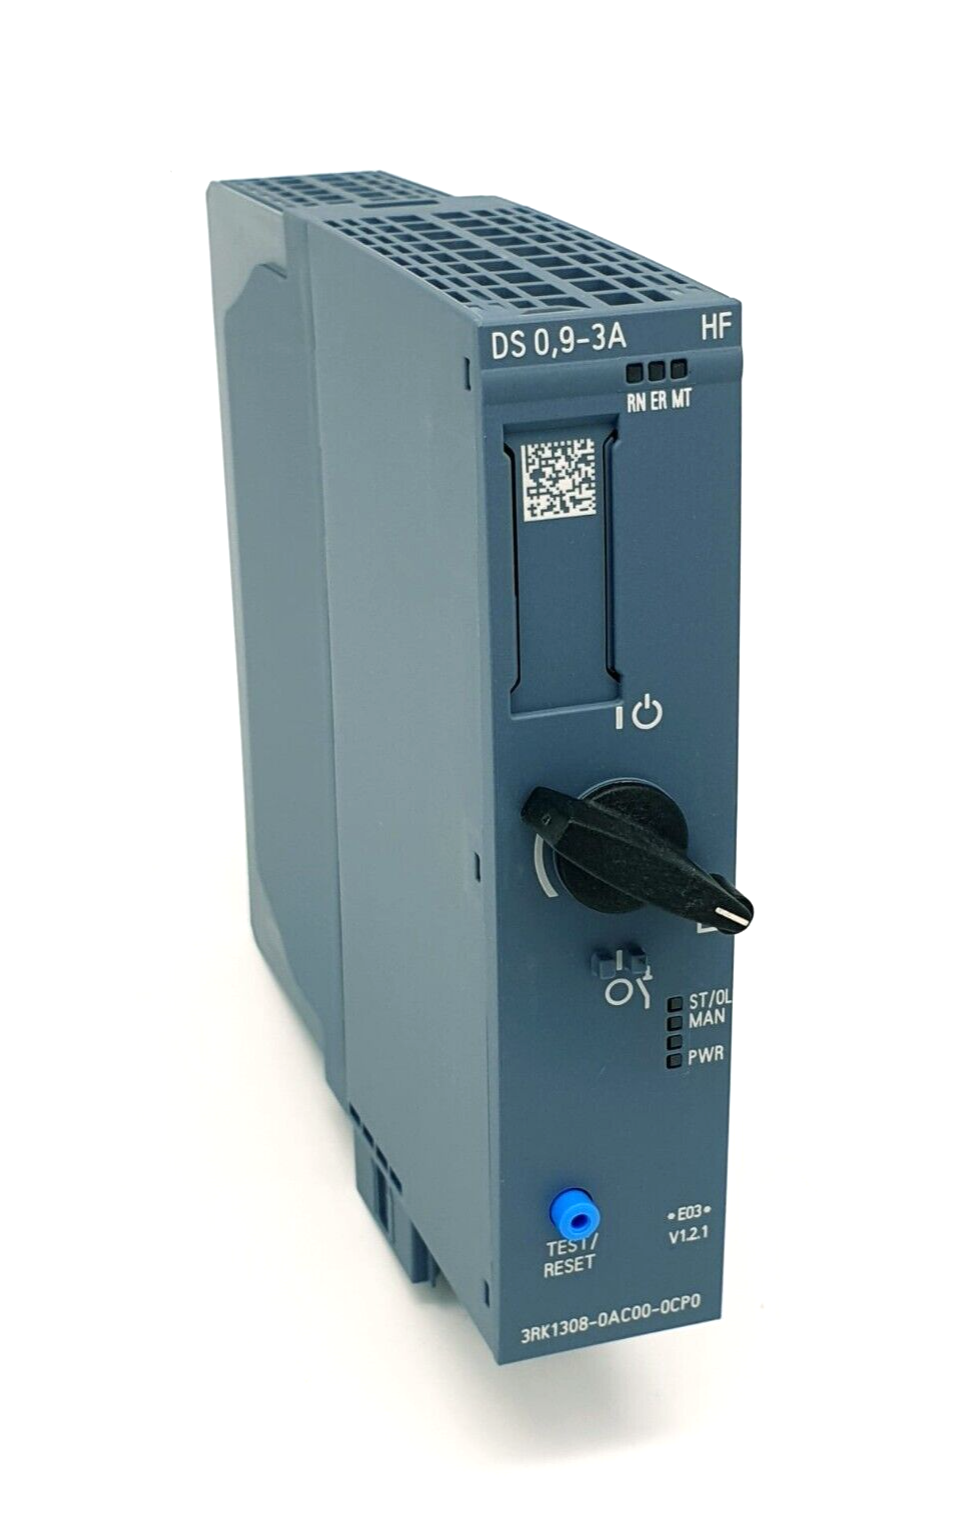 Siemens 3RK1308-0AC00-0CP0 Direktstarter High Feature 1,1kW / 400V